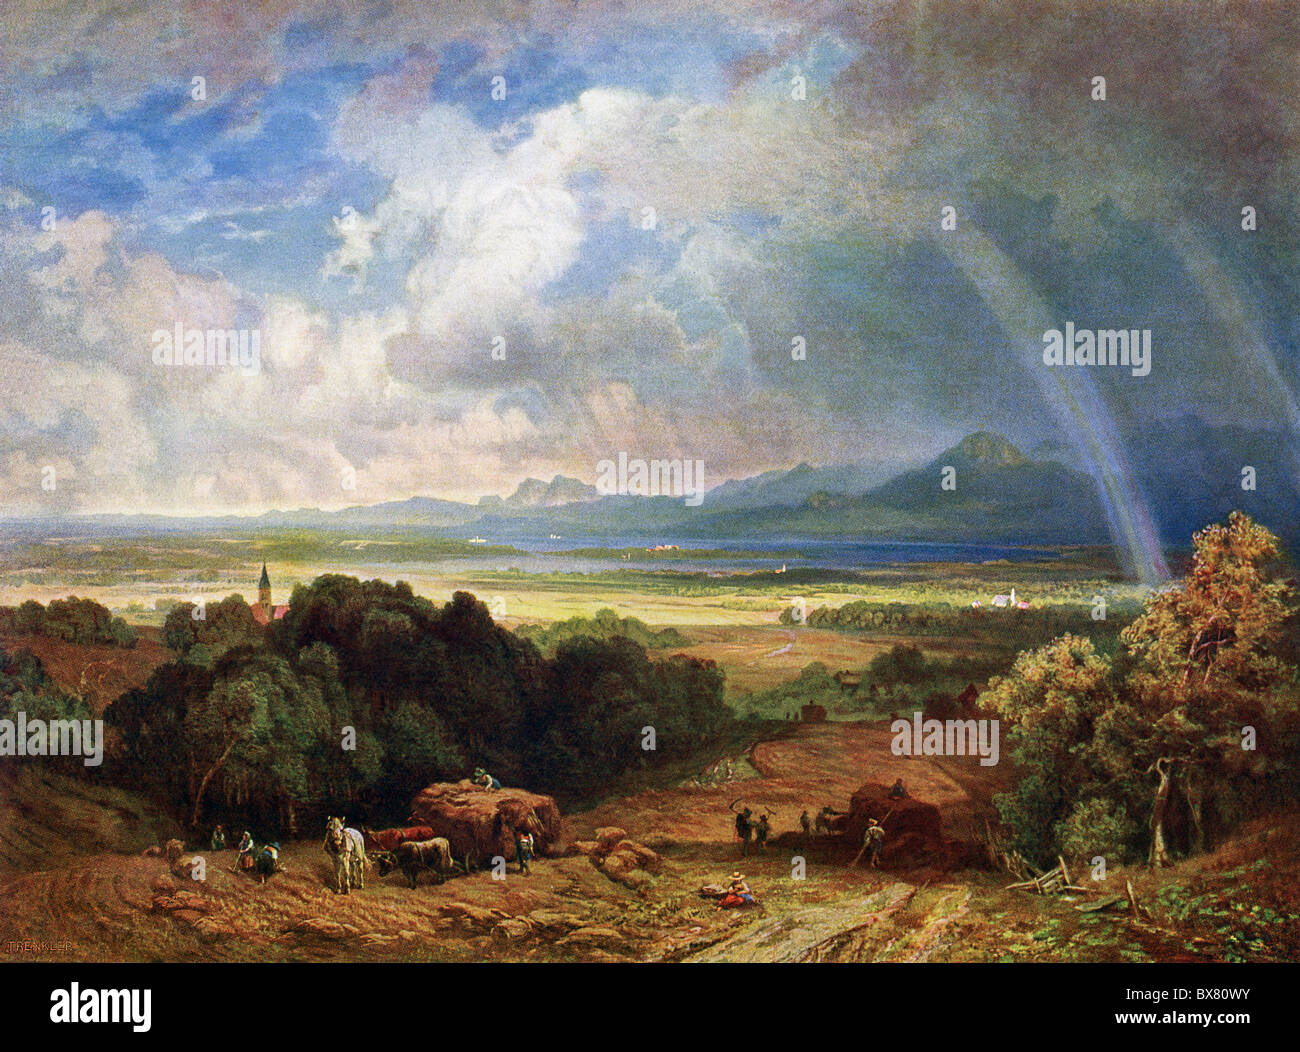 Peintre allemand Eduard Schleich peint ce paysage idyllique intitulé "Chiemsee Paysage avec des arcs-en-ciel en 1863. Banque D'Images